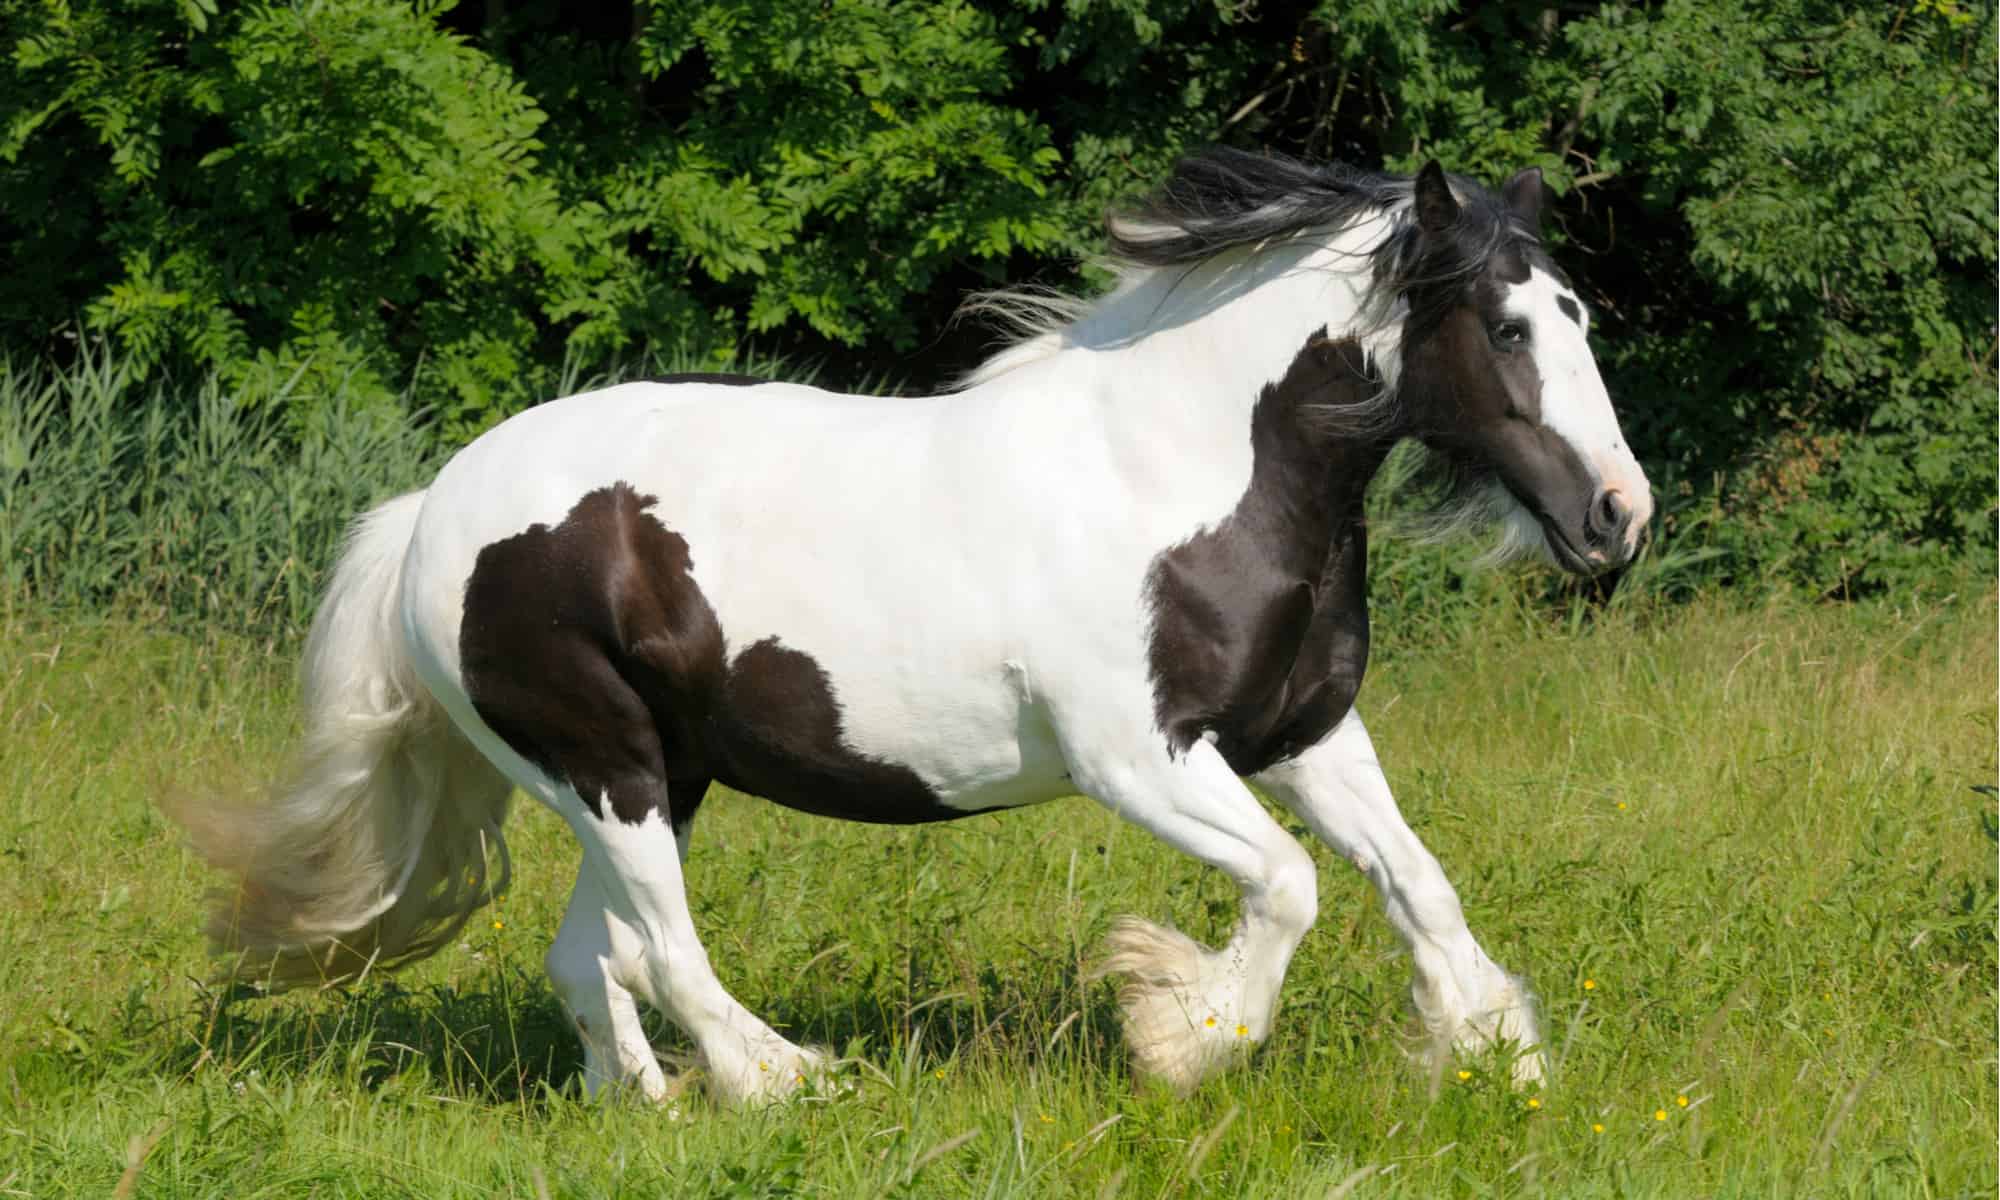 Horse Background